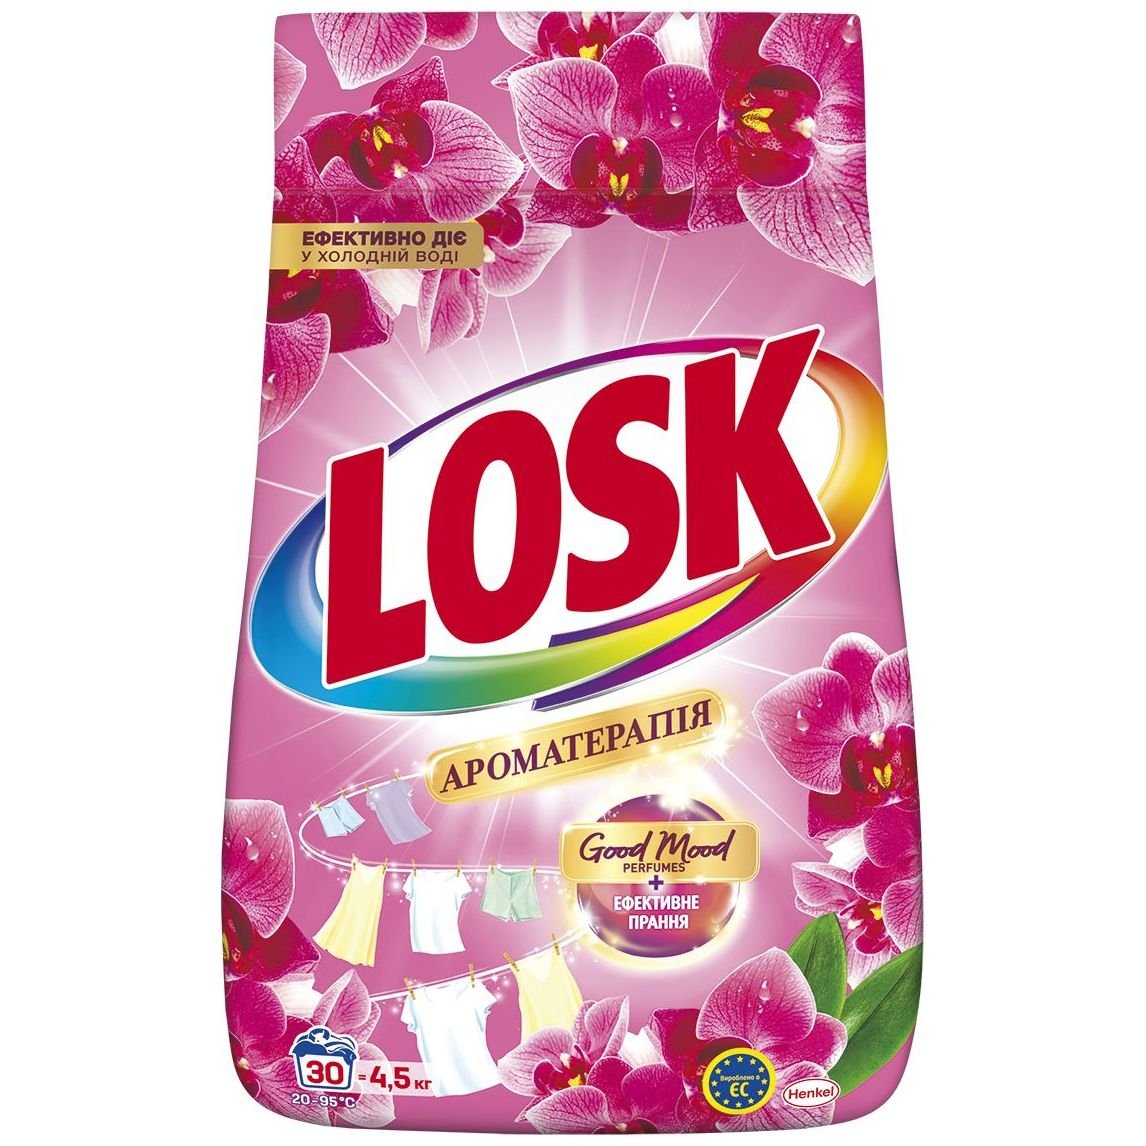 Порошок для стирки Losk Ароматерапия Эфирные масла и аромат Малазийского цветка 4.5 кг - фото 1